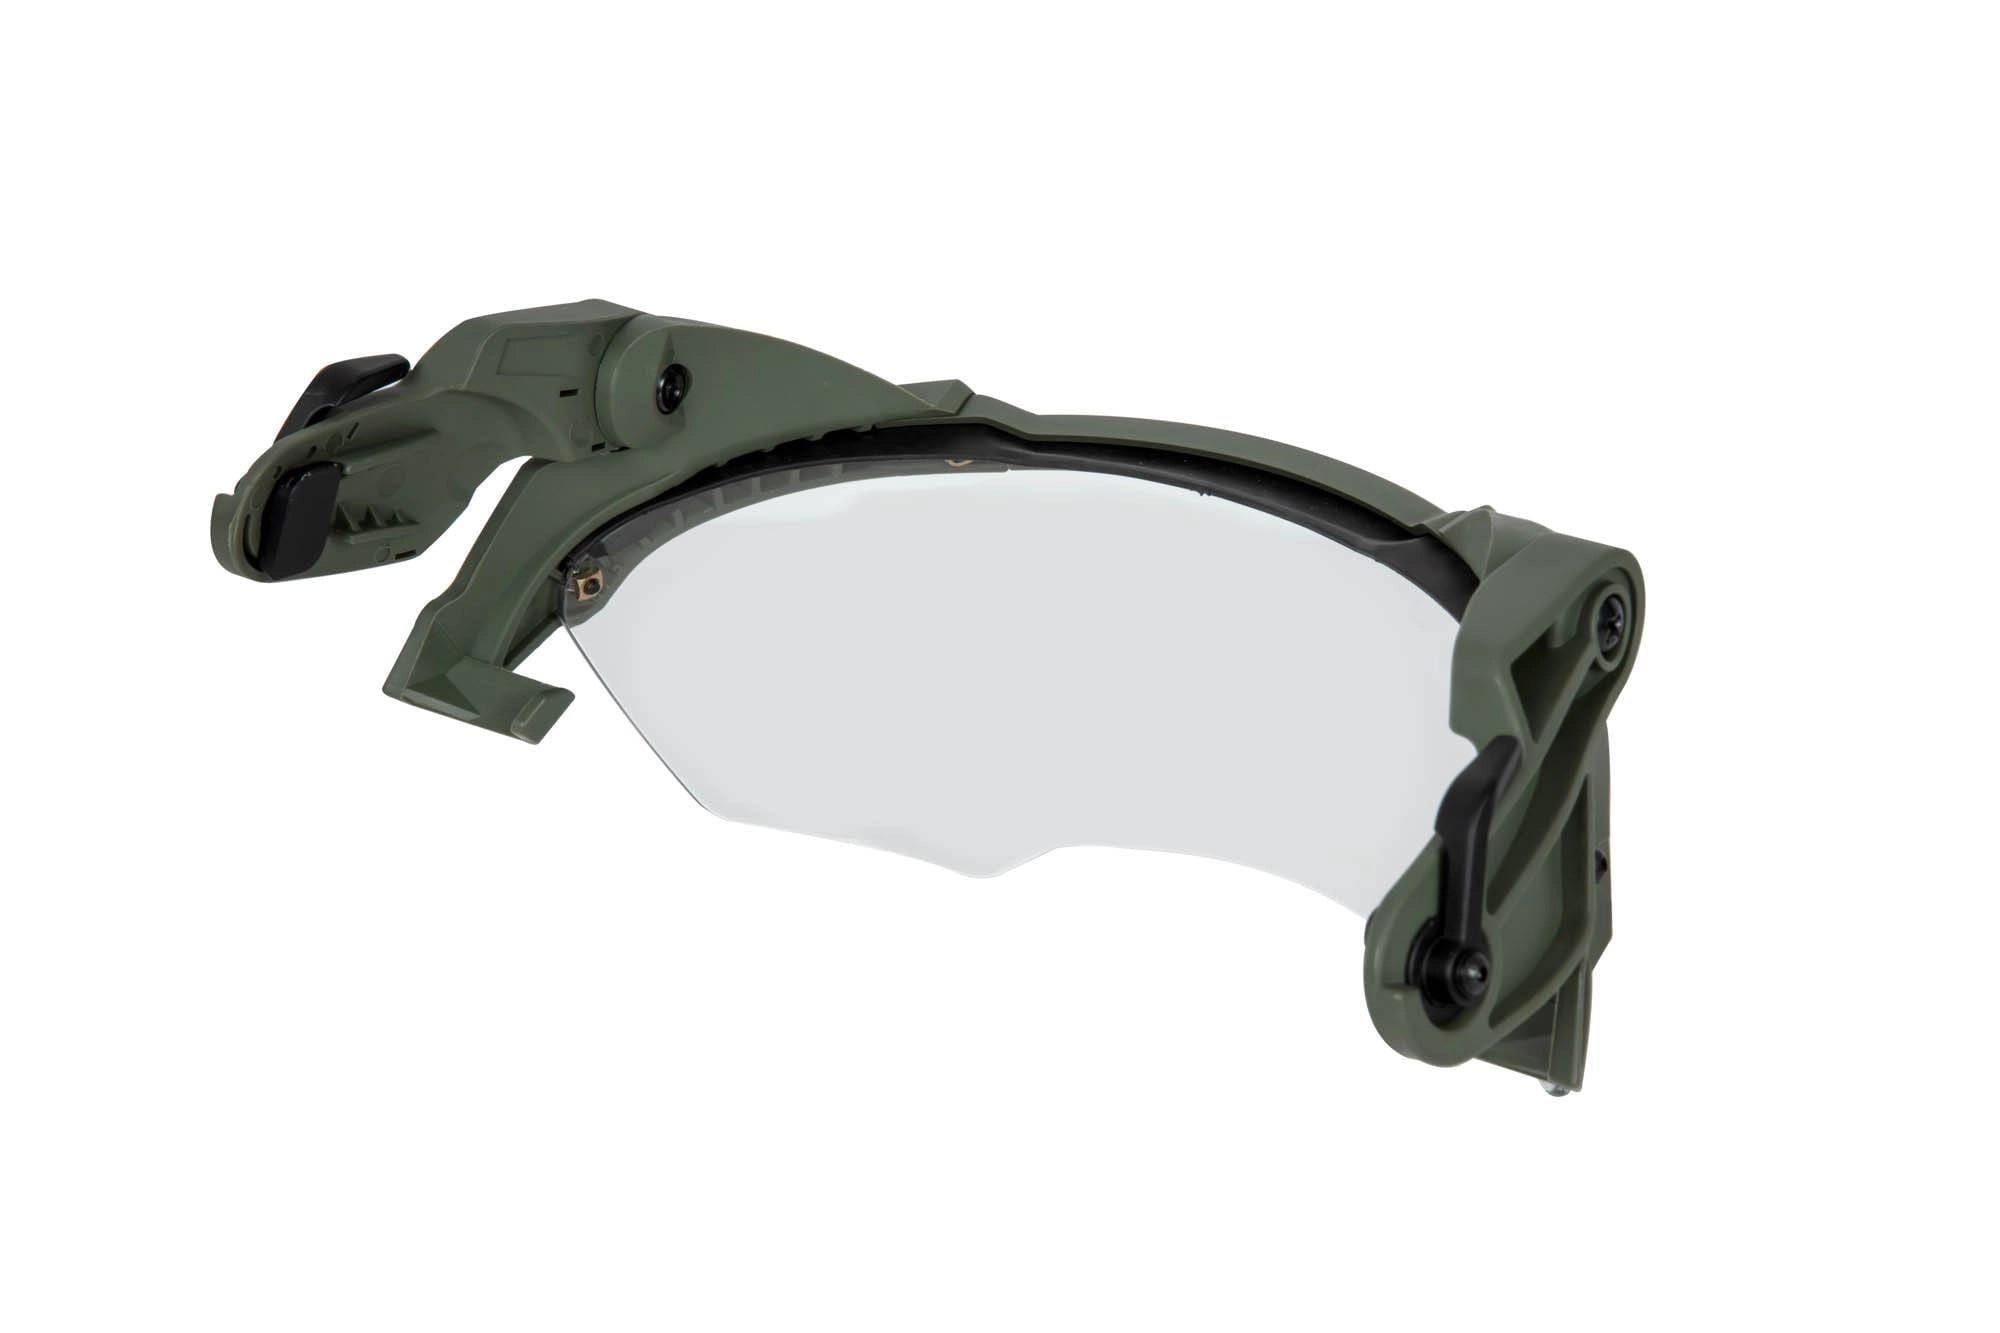 Schutzbrille / Visier für Helme vom Typ FAST - oliv